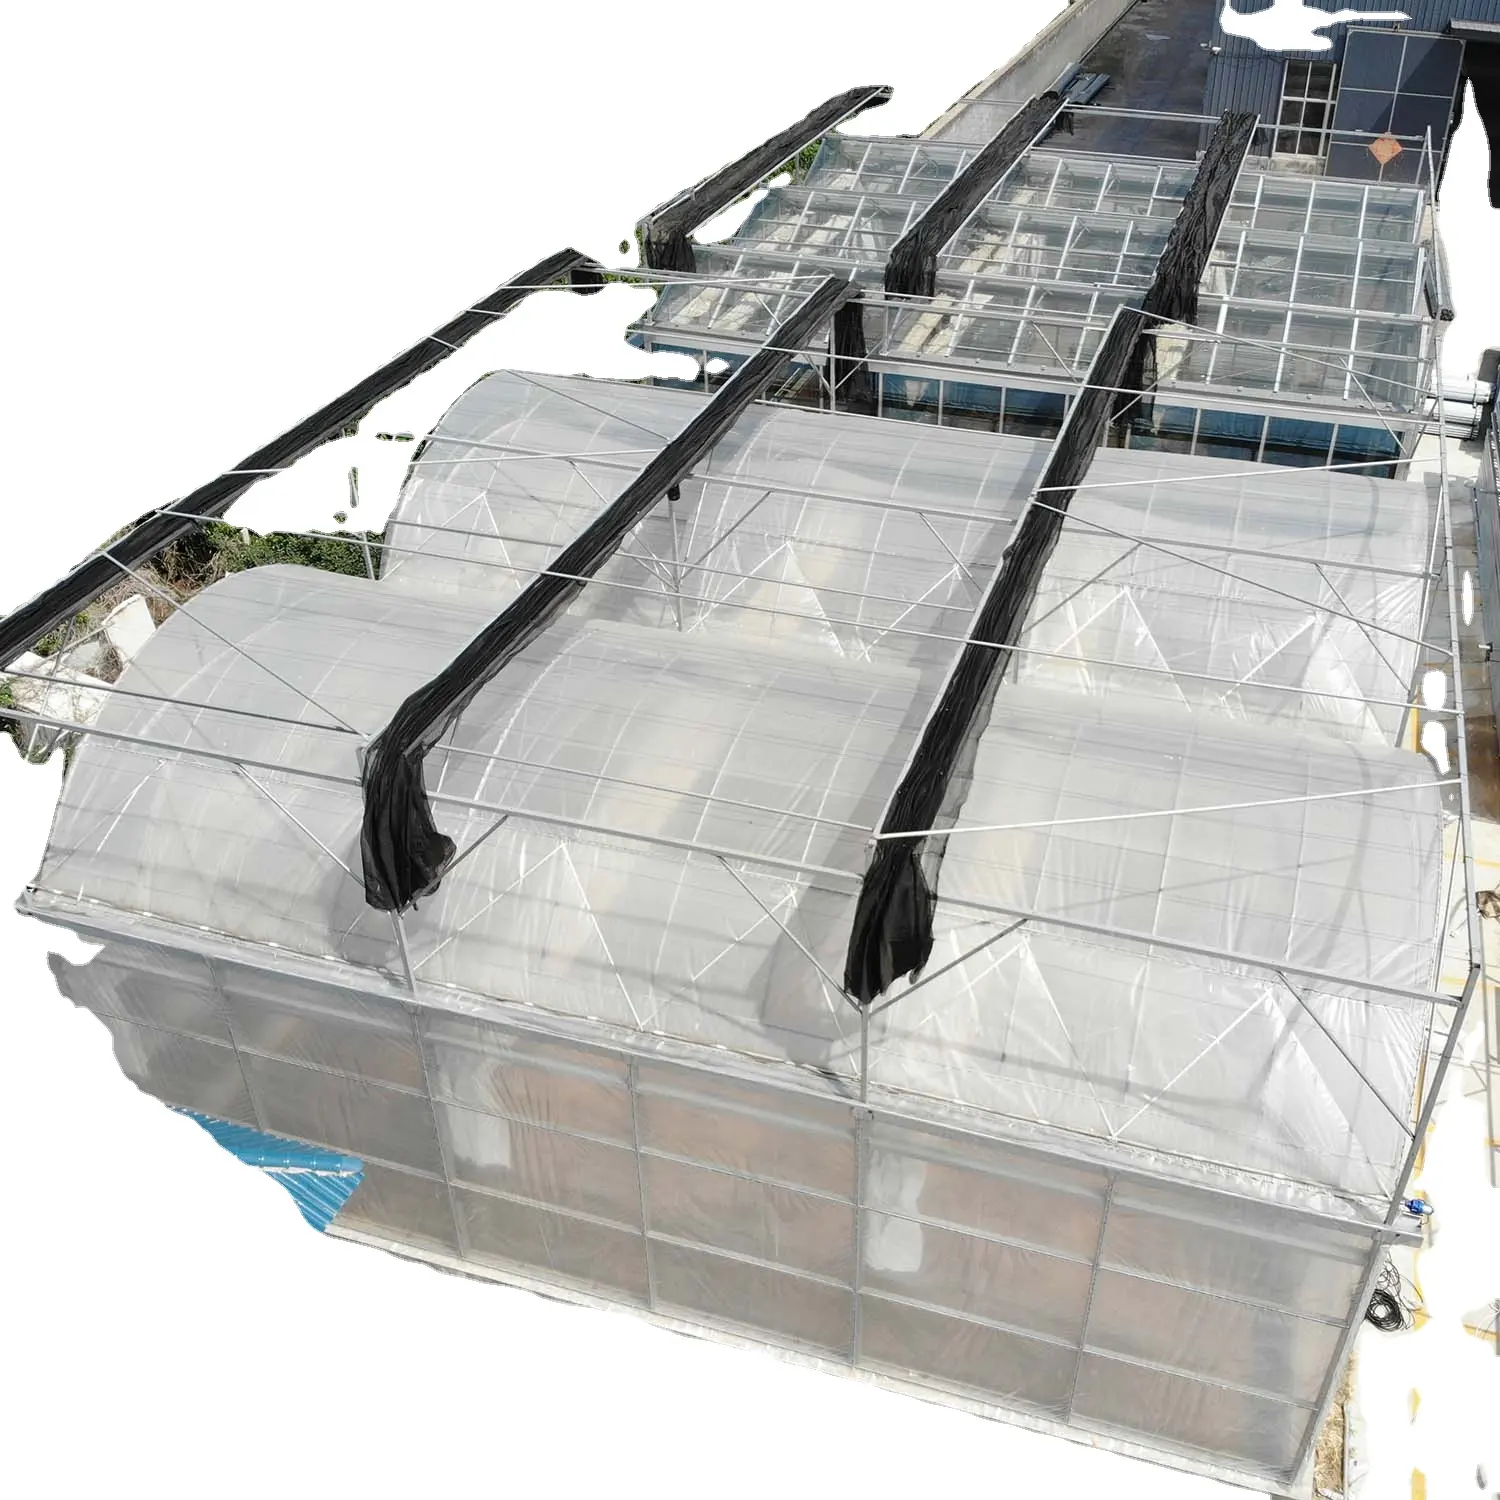 Celldeal — serre solaire passif à 5 rangs multiples, attaches en plastique avec film plastique